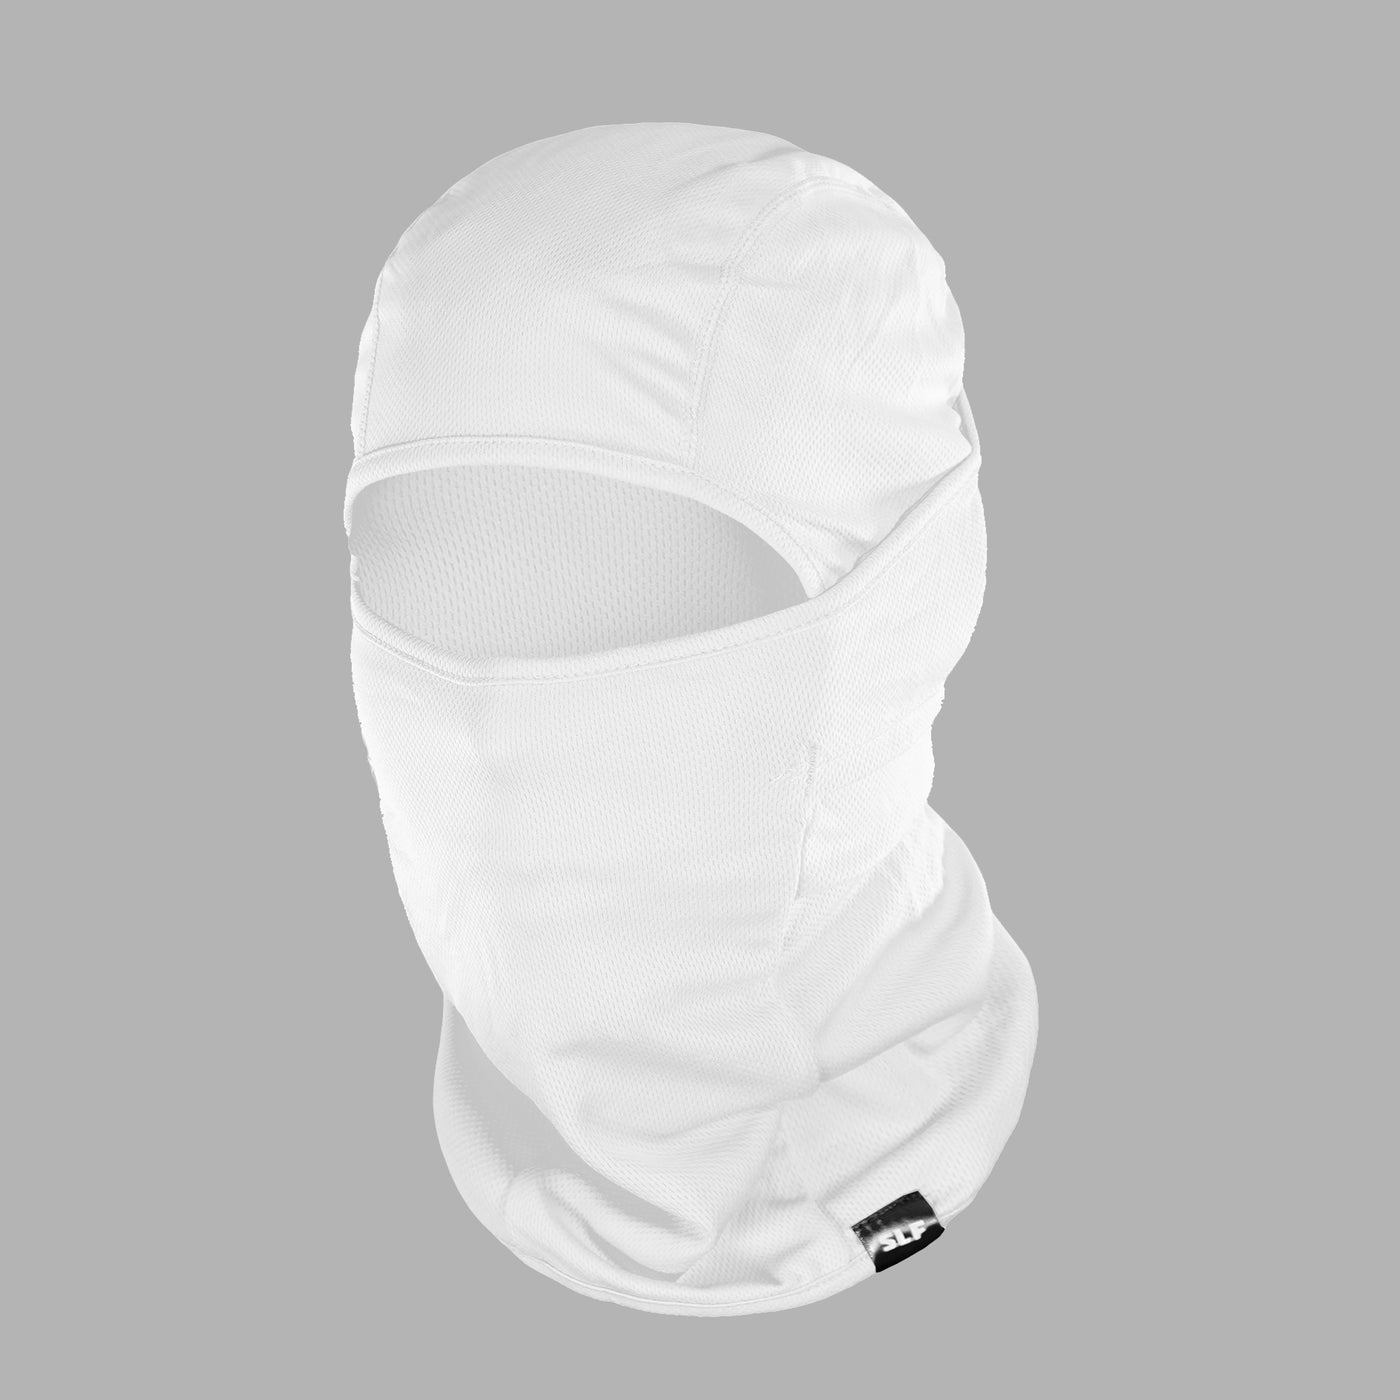 Basic White Loose-fitting Shiesty Mask